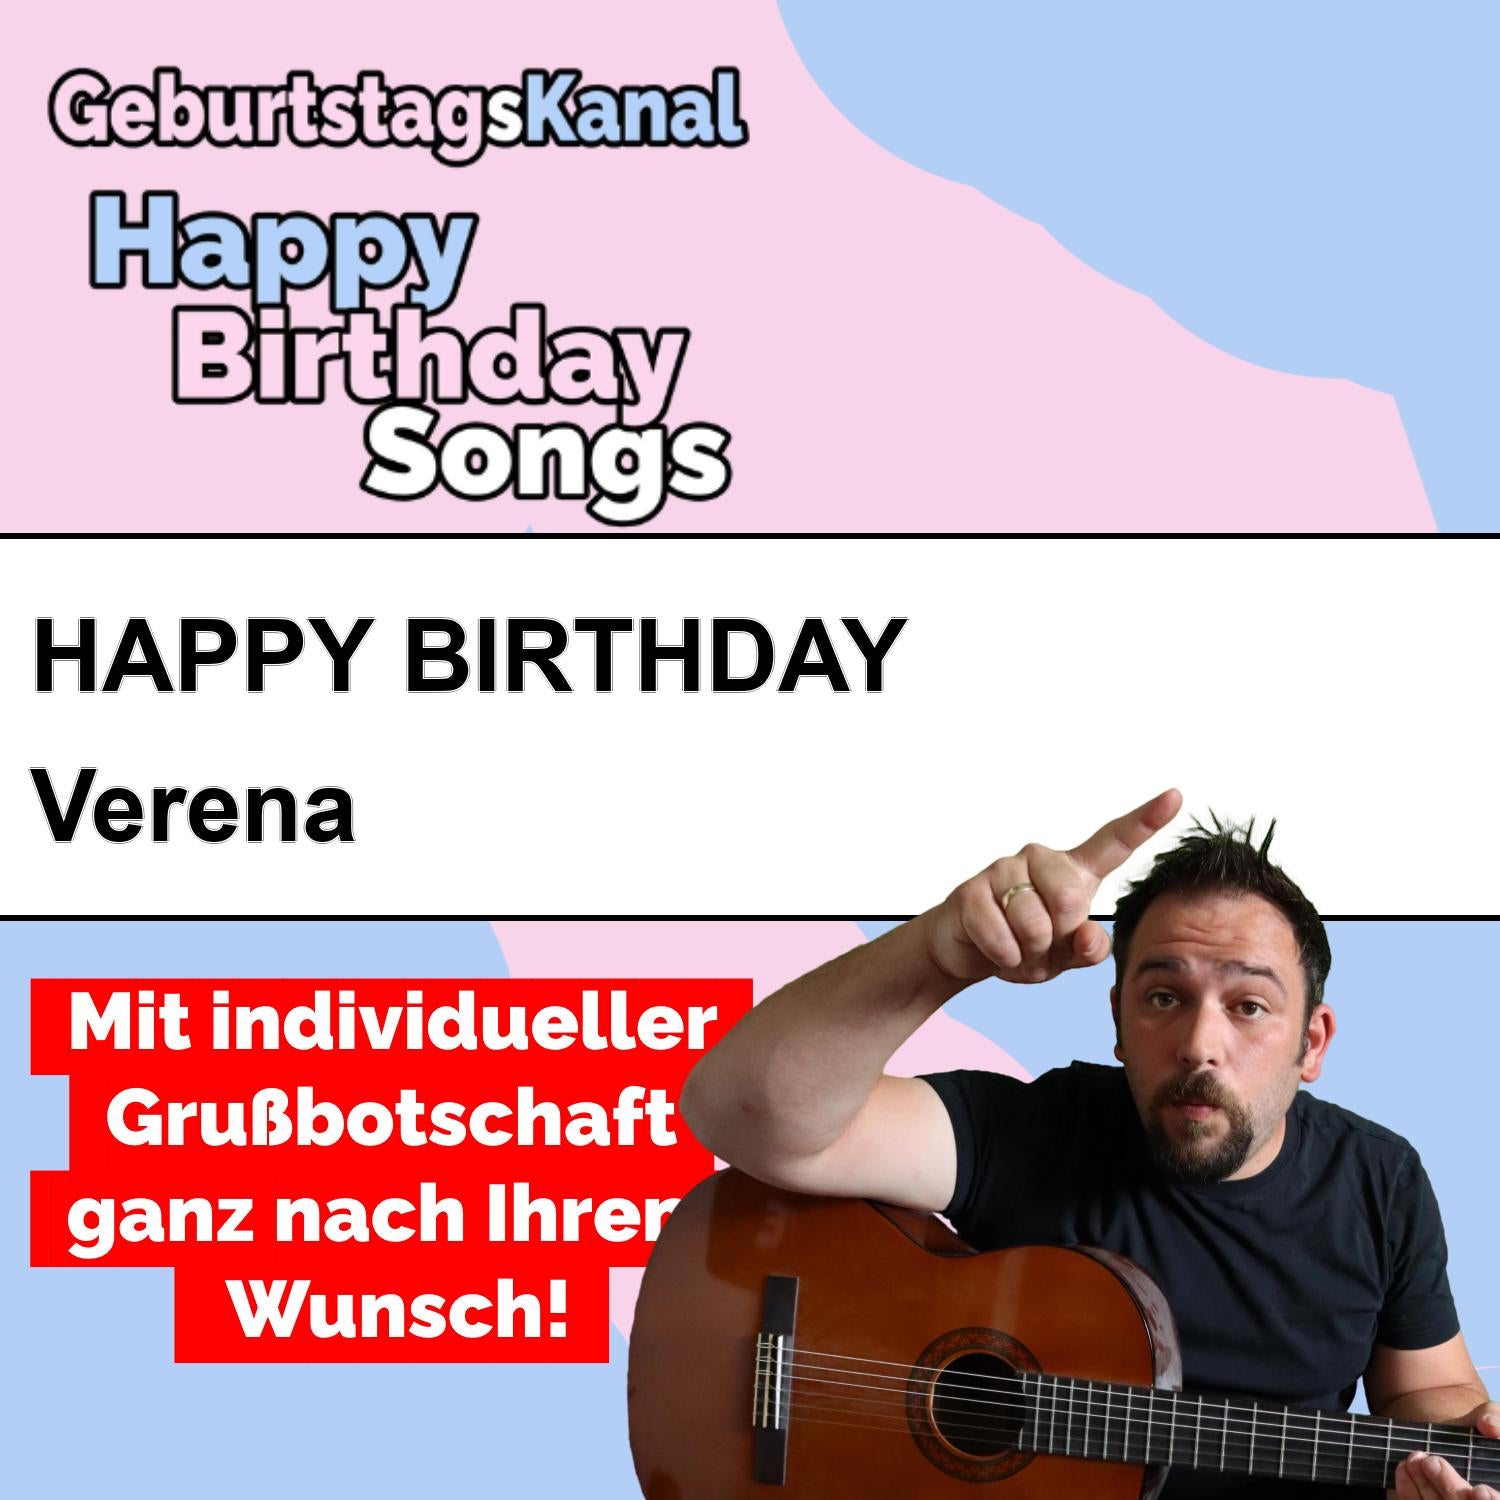 Produktbild Happy Birthday to you Verena mit Wunschgrußbotschaft